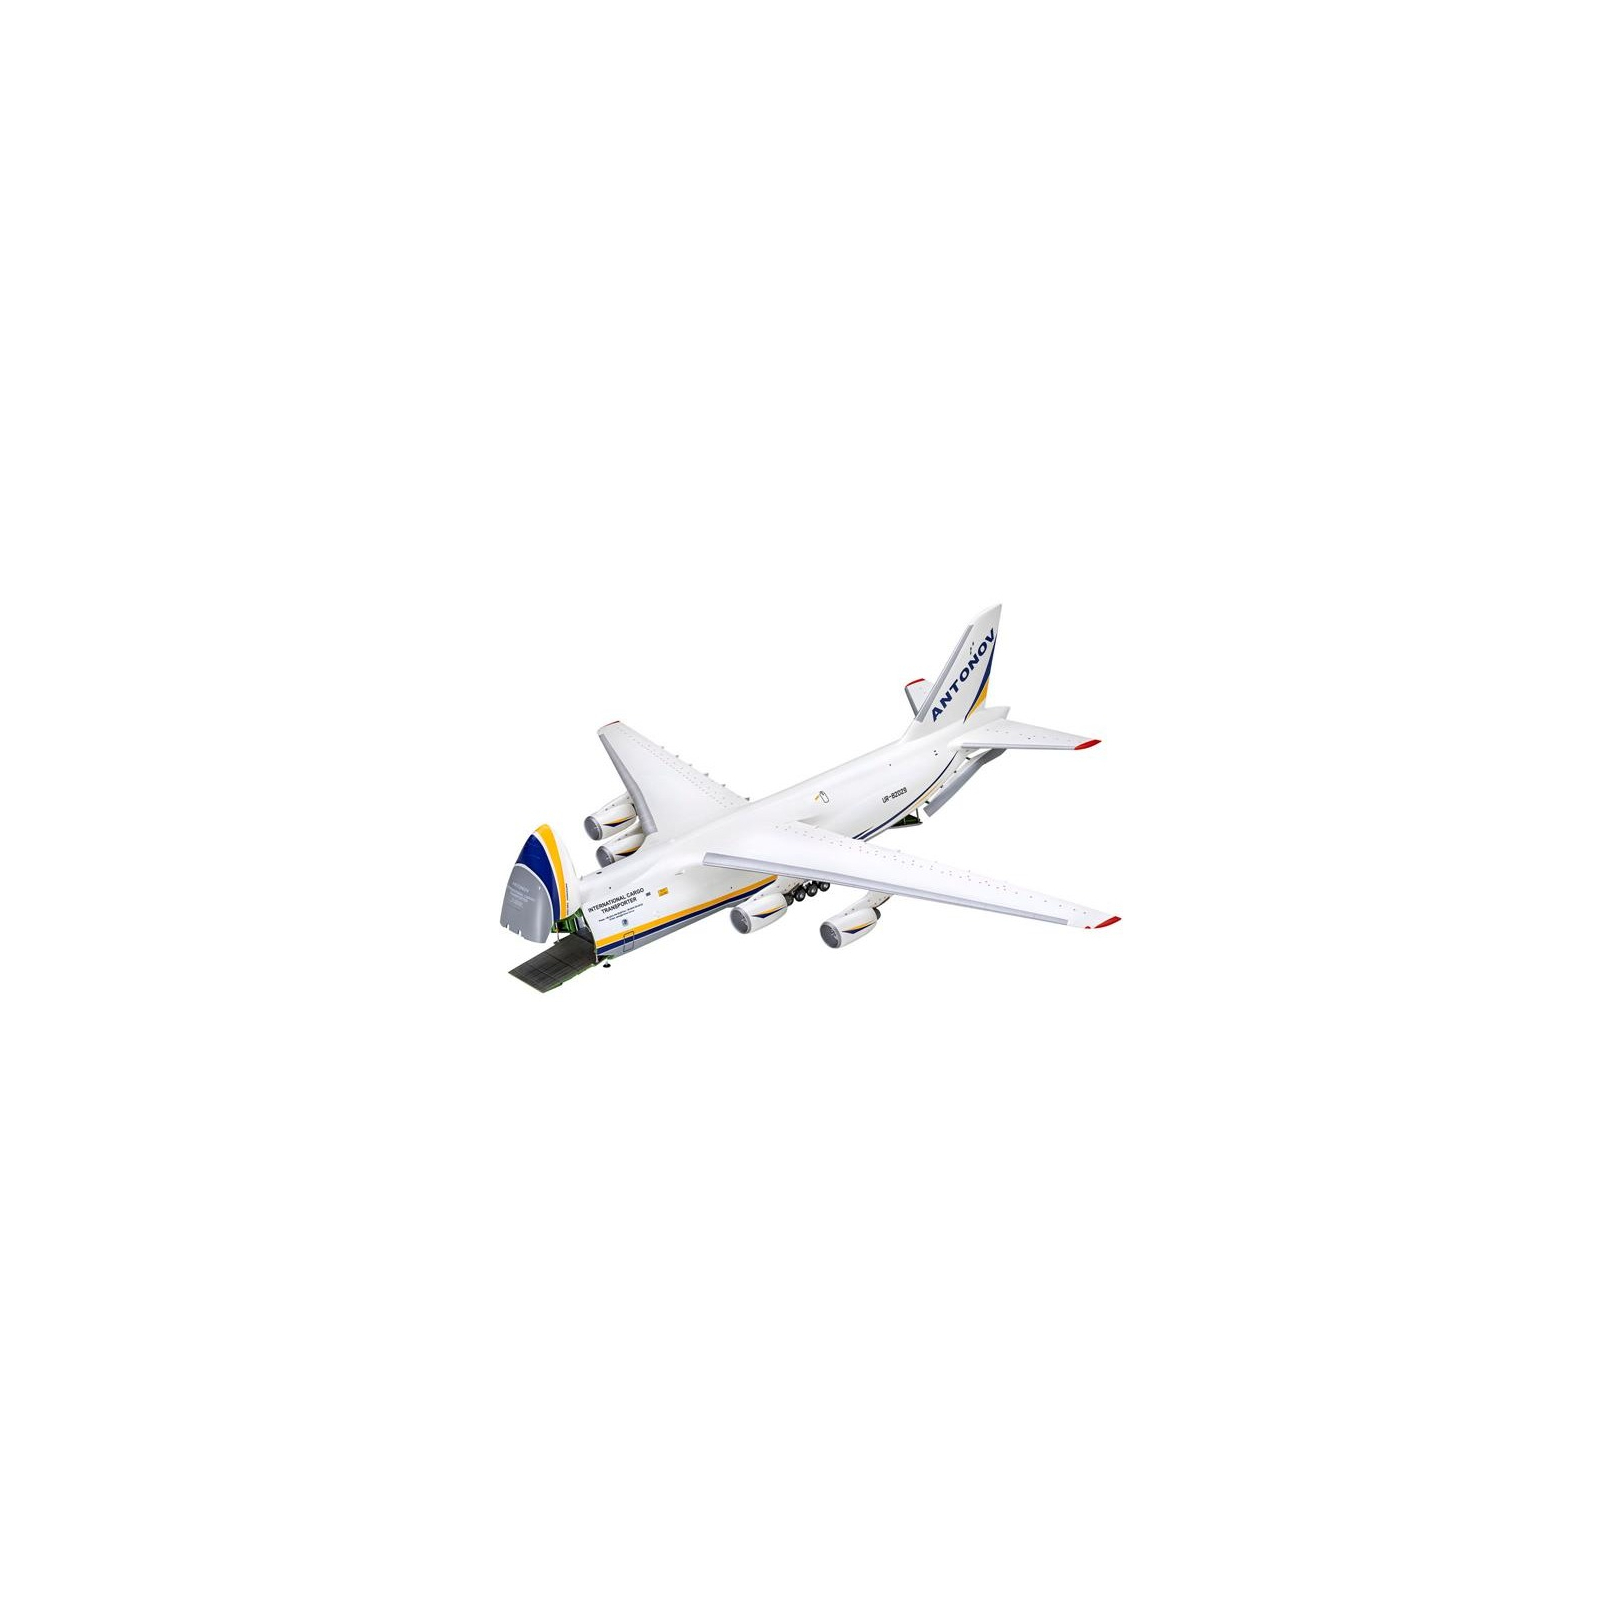 Сборная модель Revell Грузовой самолет АН-124 Руслан уровень 5 масштаб 1:144 (RVL-03807) изображение 2